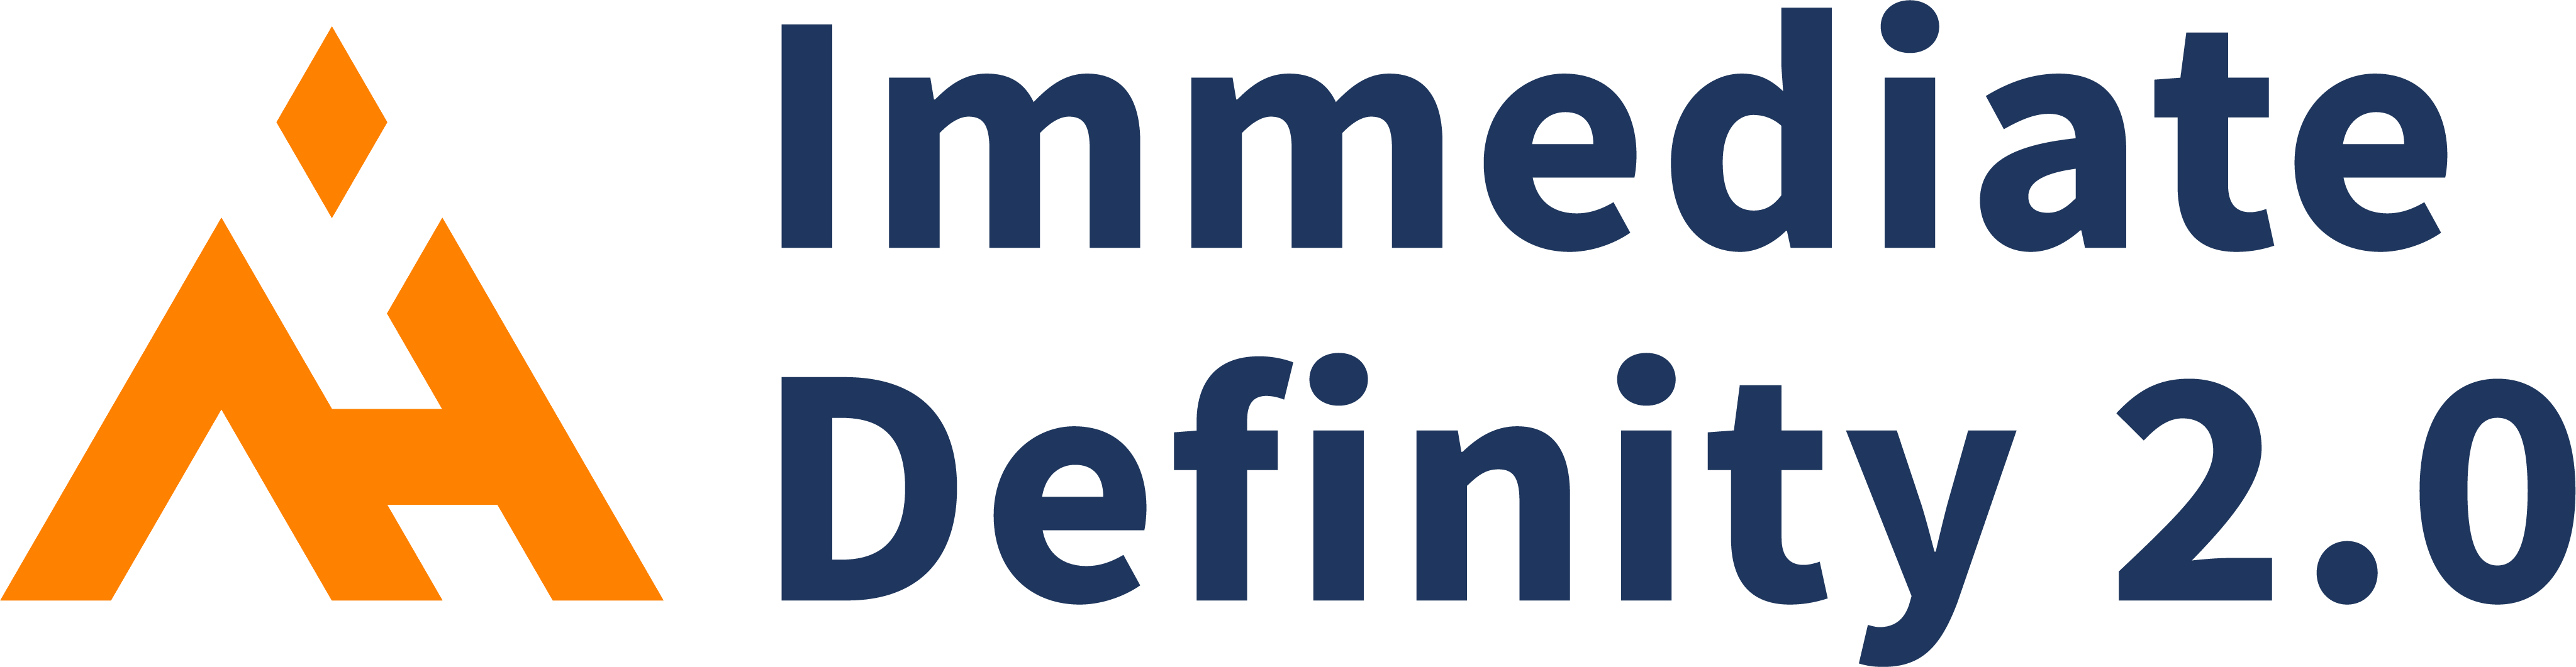 Logotipo inmediato de Definity 2.0